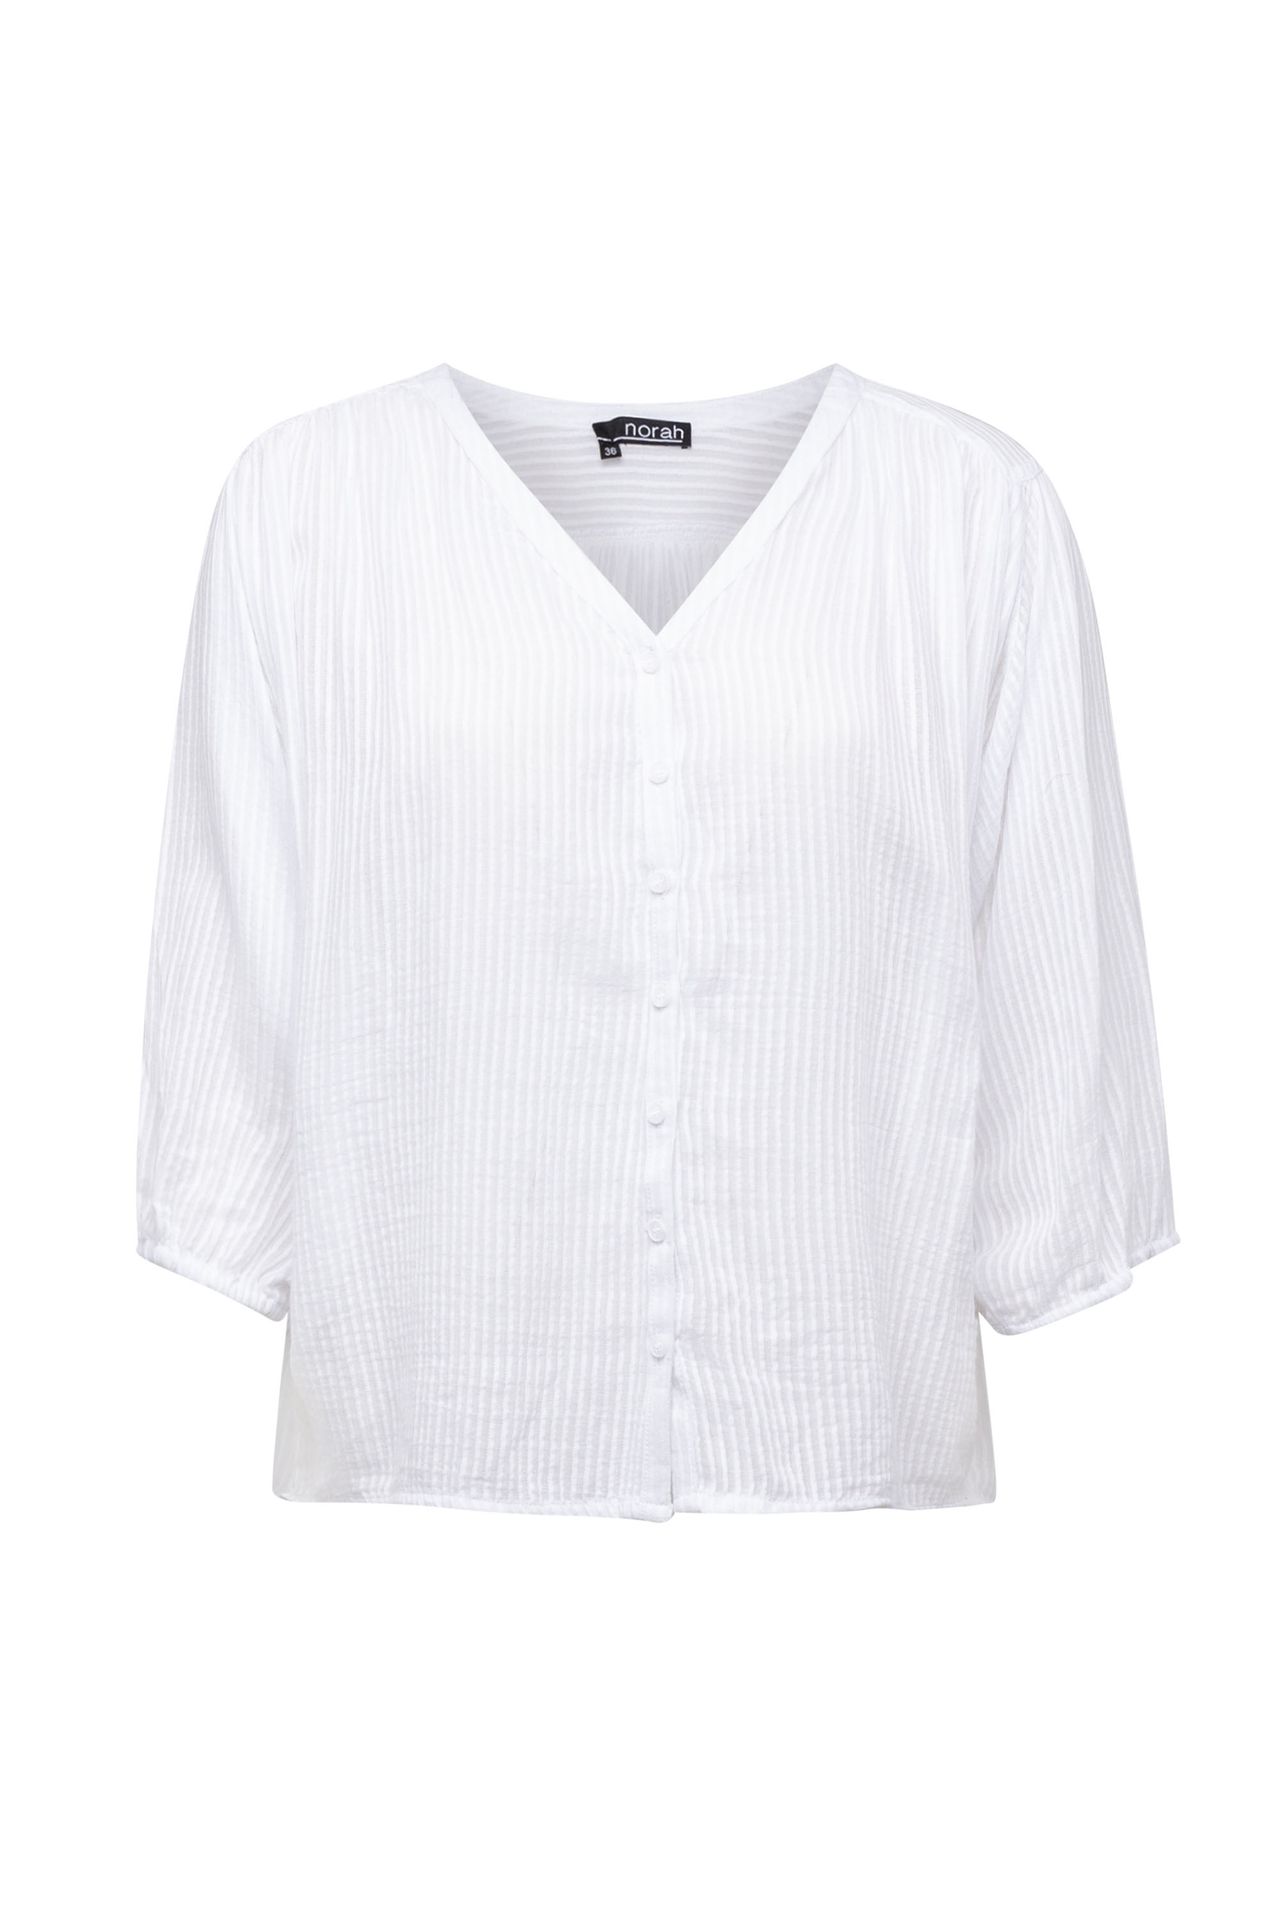  Witte blouse met streeppatroon white 213741-100-40